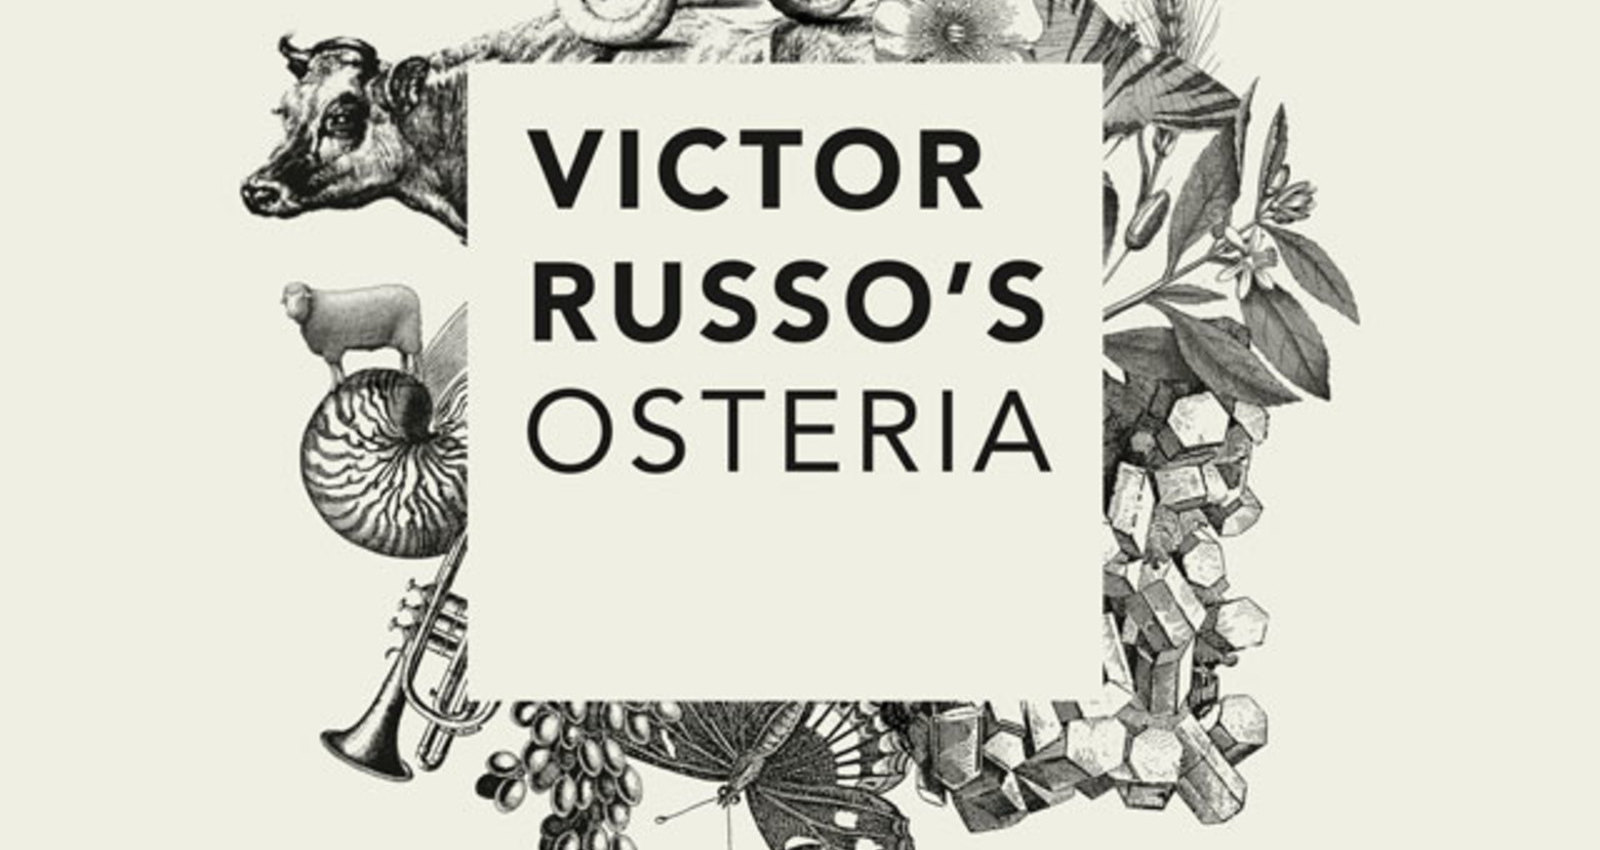 Corporate Identity Victor Russo's Osteria